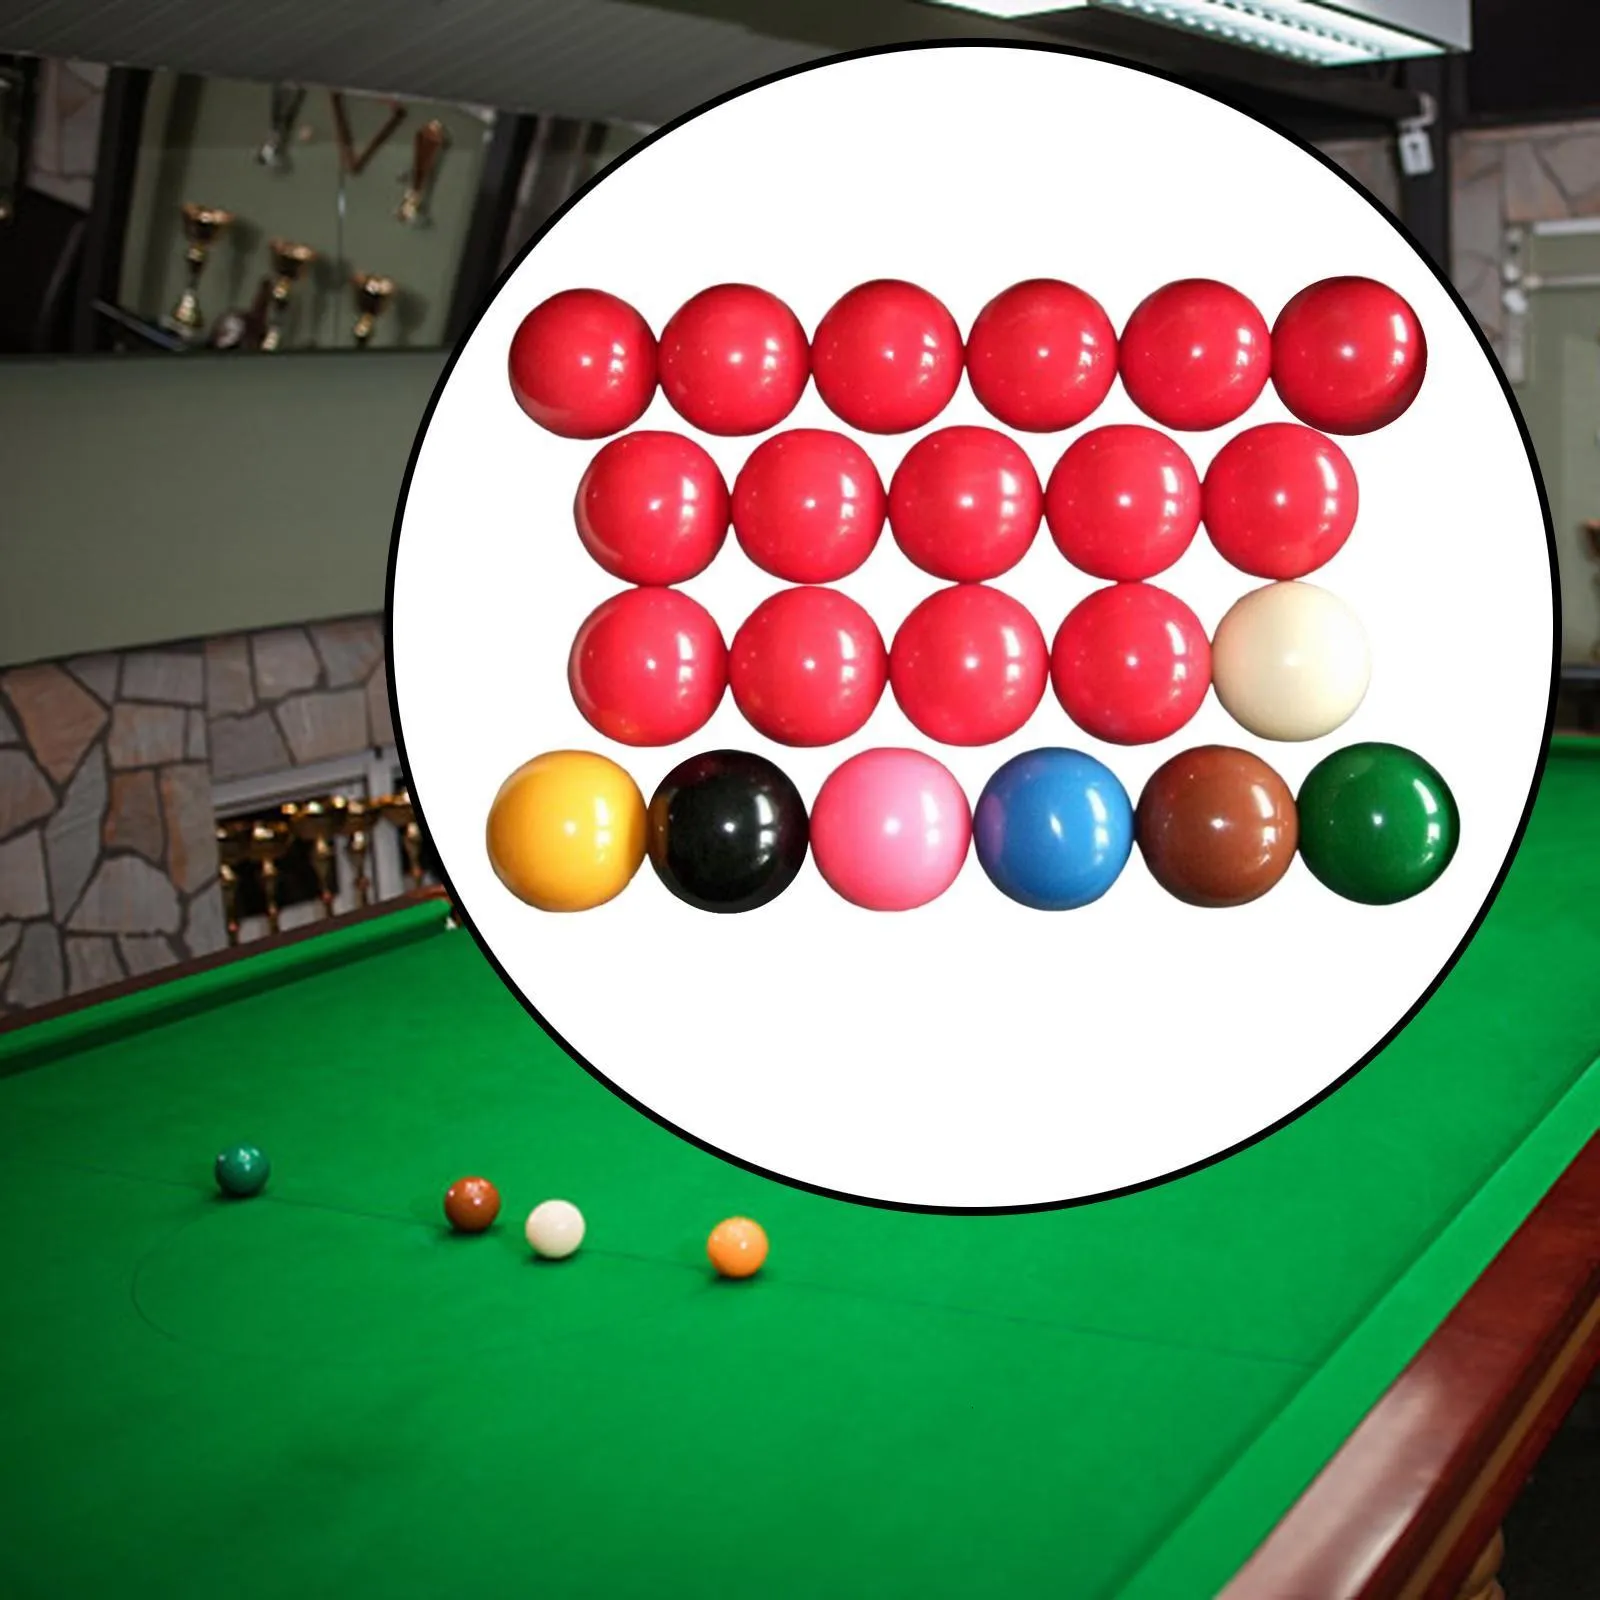 Biljardtillbehör Snooker Balls Ställ in i full storlek 2 1 16 tum pool för officiell spelboll 230821